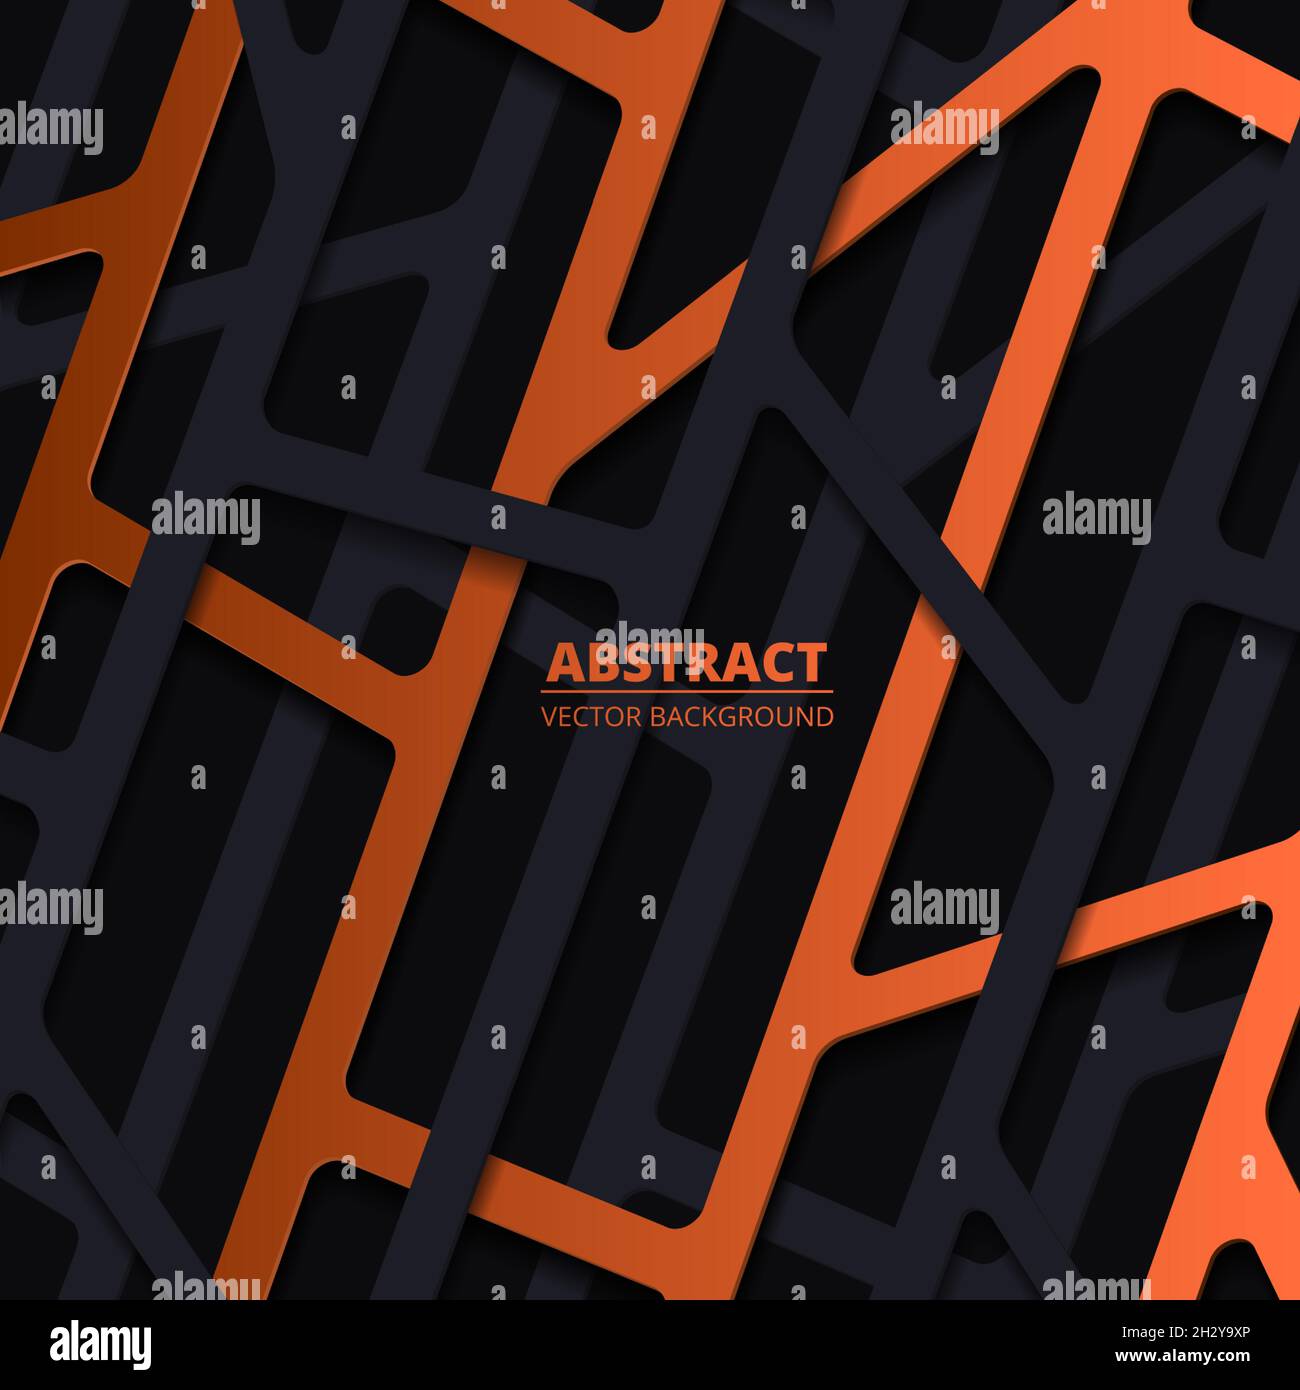 Eleganter abstrakter Hintergrund mit schwarzen und orangefarbenen linearen, tiefen Papierformen Stock Vektor